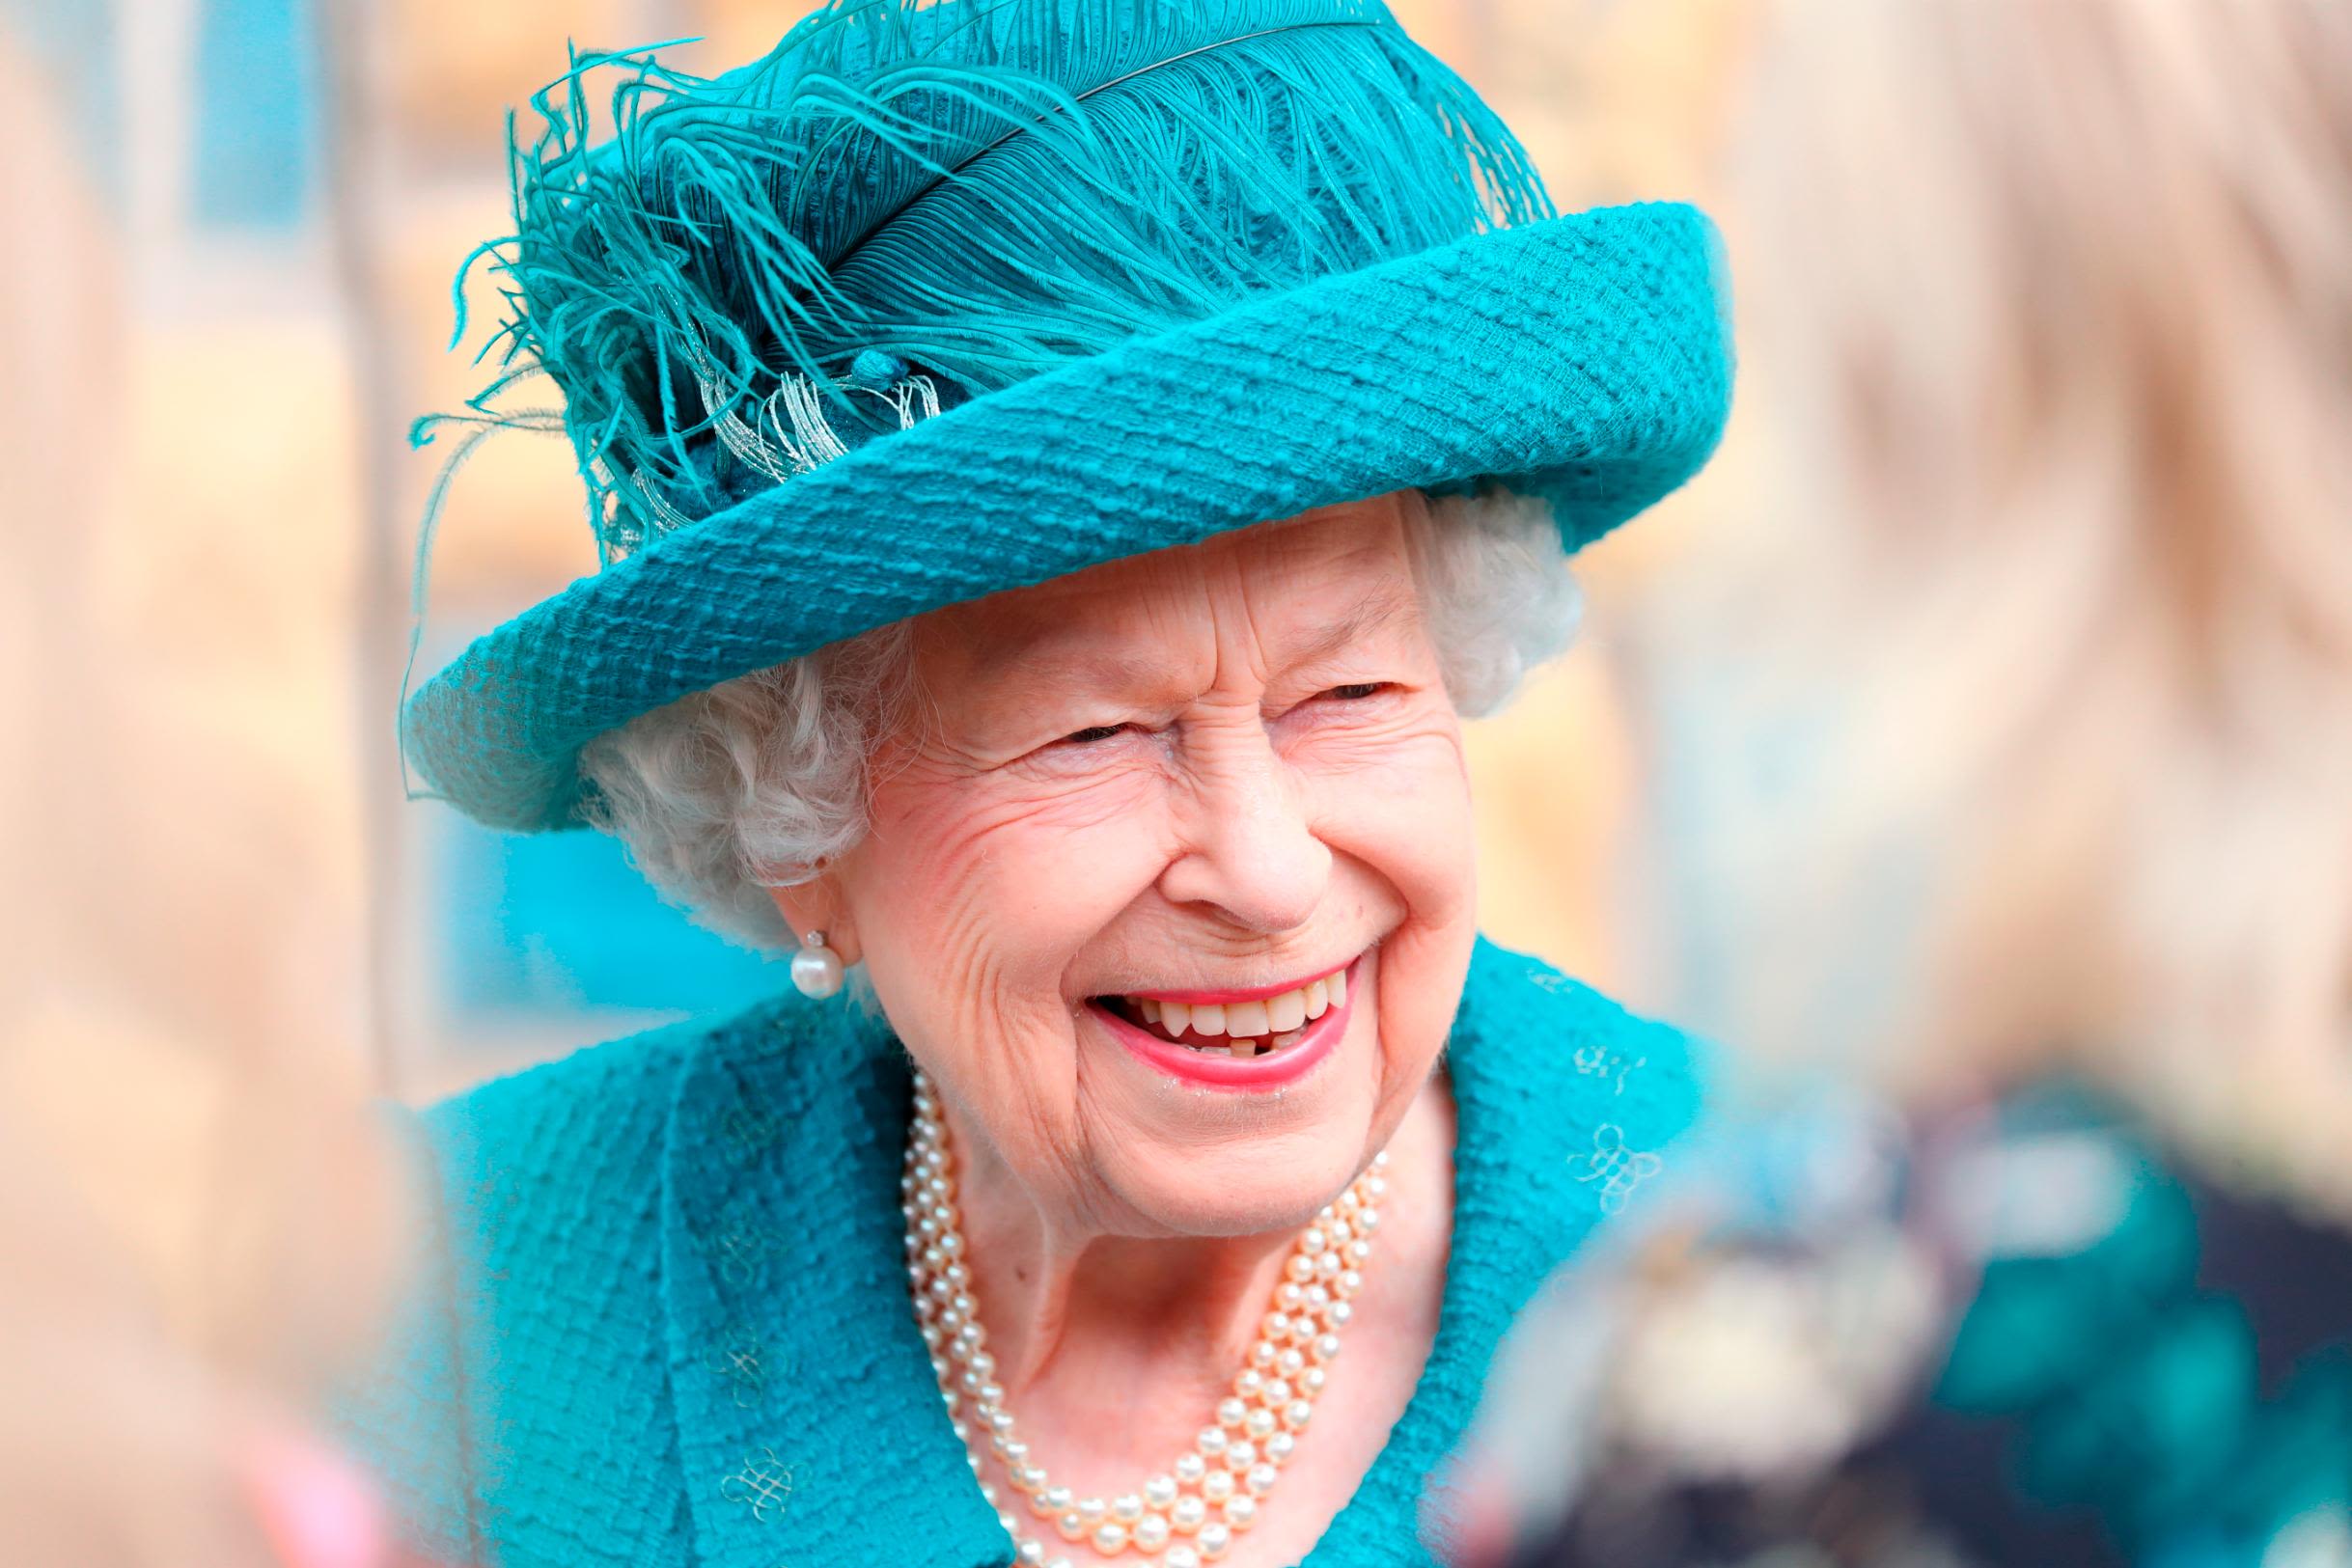 Britain's queen has had far more triumphs than failures - The